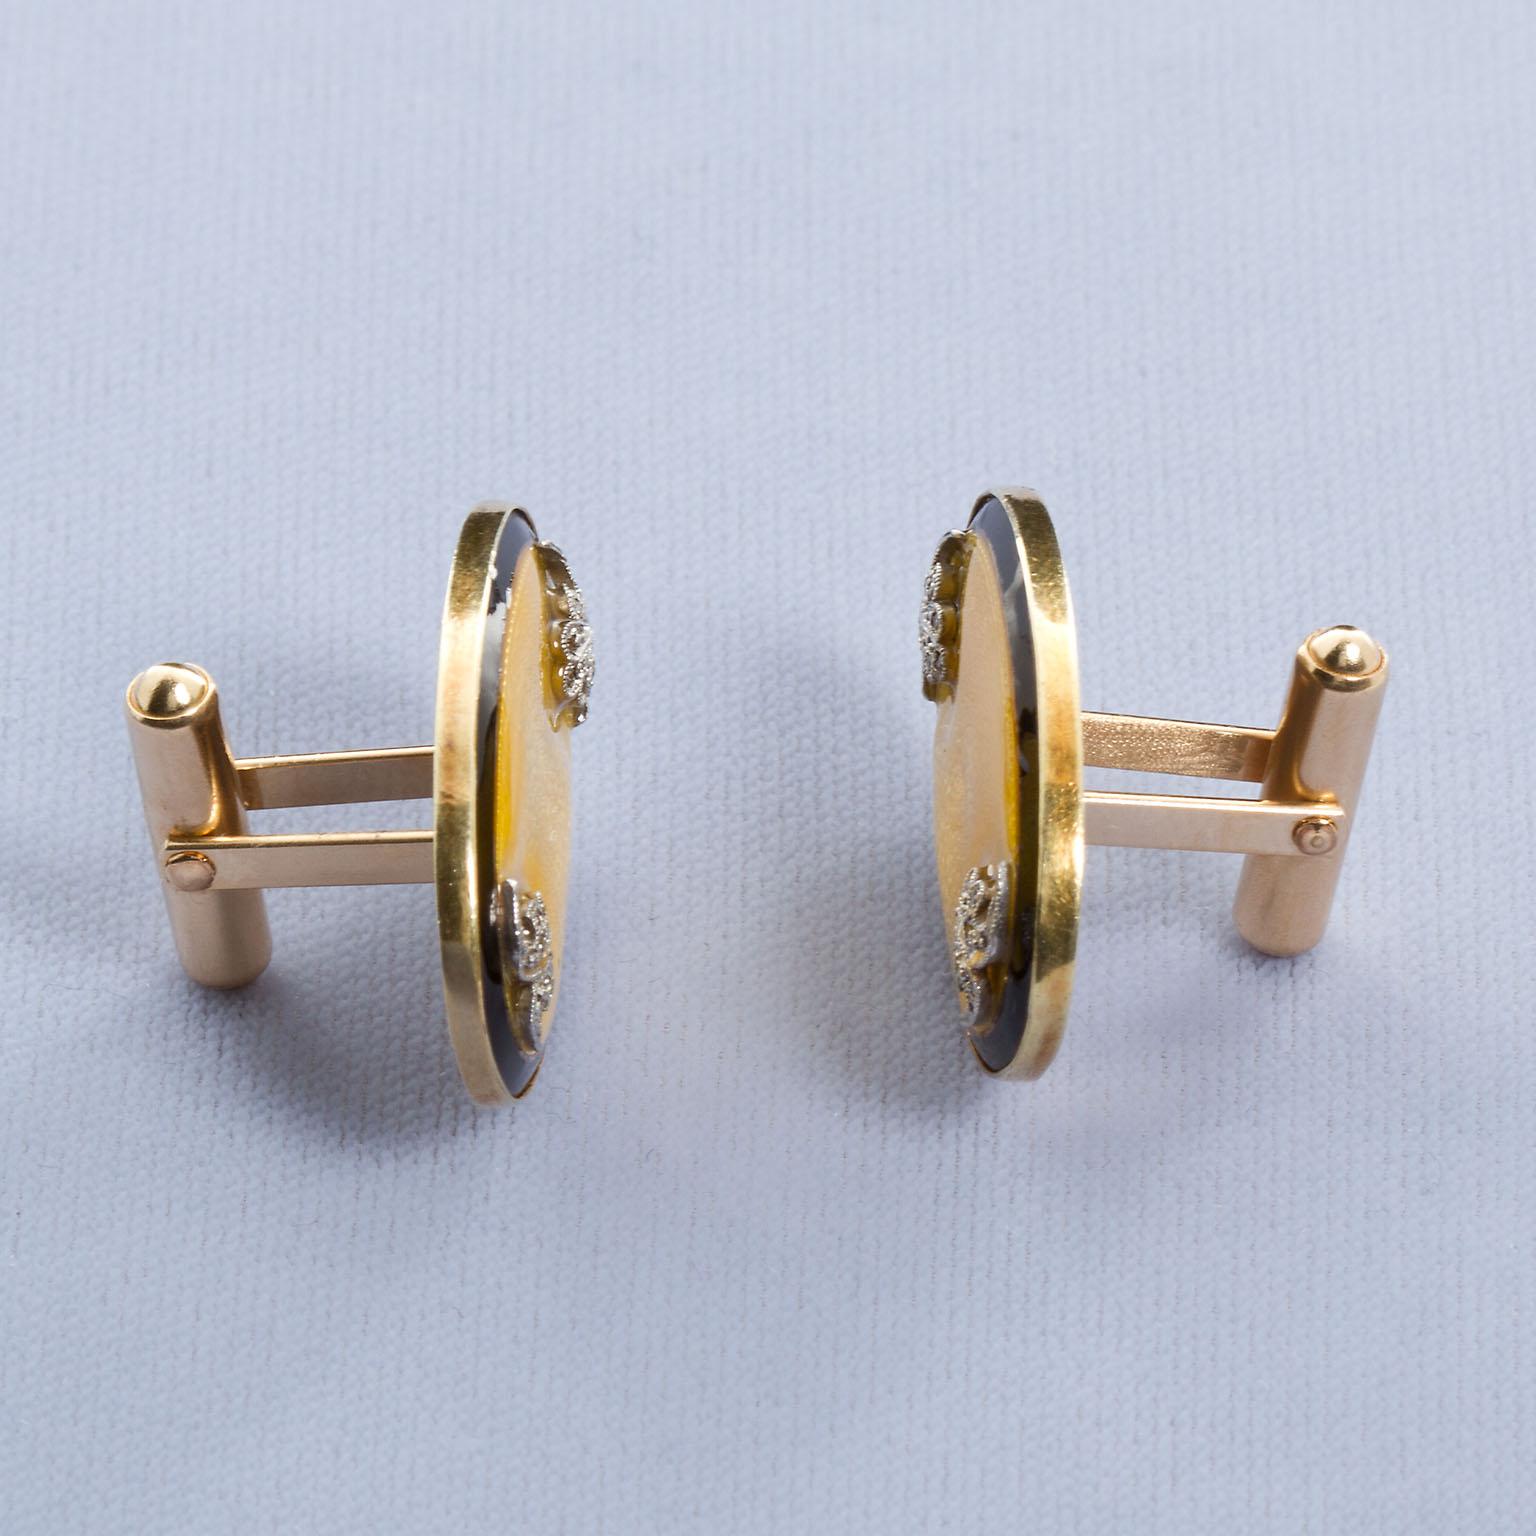 Ein schneidiges Paar Manschettenknöpfe aus Diamant und Gold mit schwarzer und klarer Emaille auf Gelbgold im Guilloche-Stil. Diese Manschettenknöpfe verströmen den Charme der alten Zeit mit prächtigen Fleur-de-lis-Diamanten in Platin an den beiden